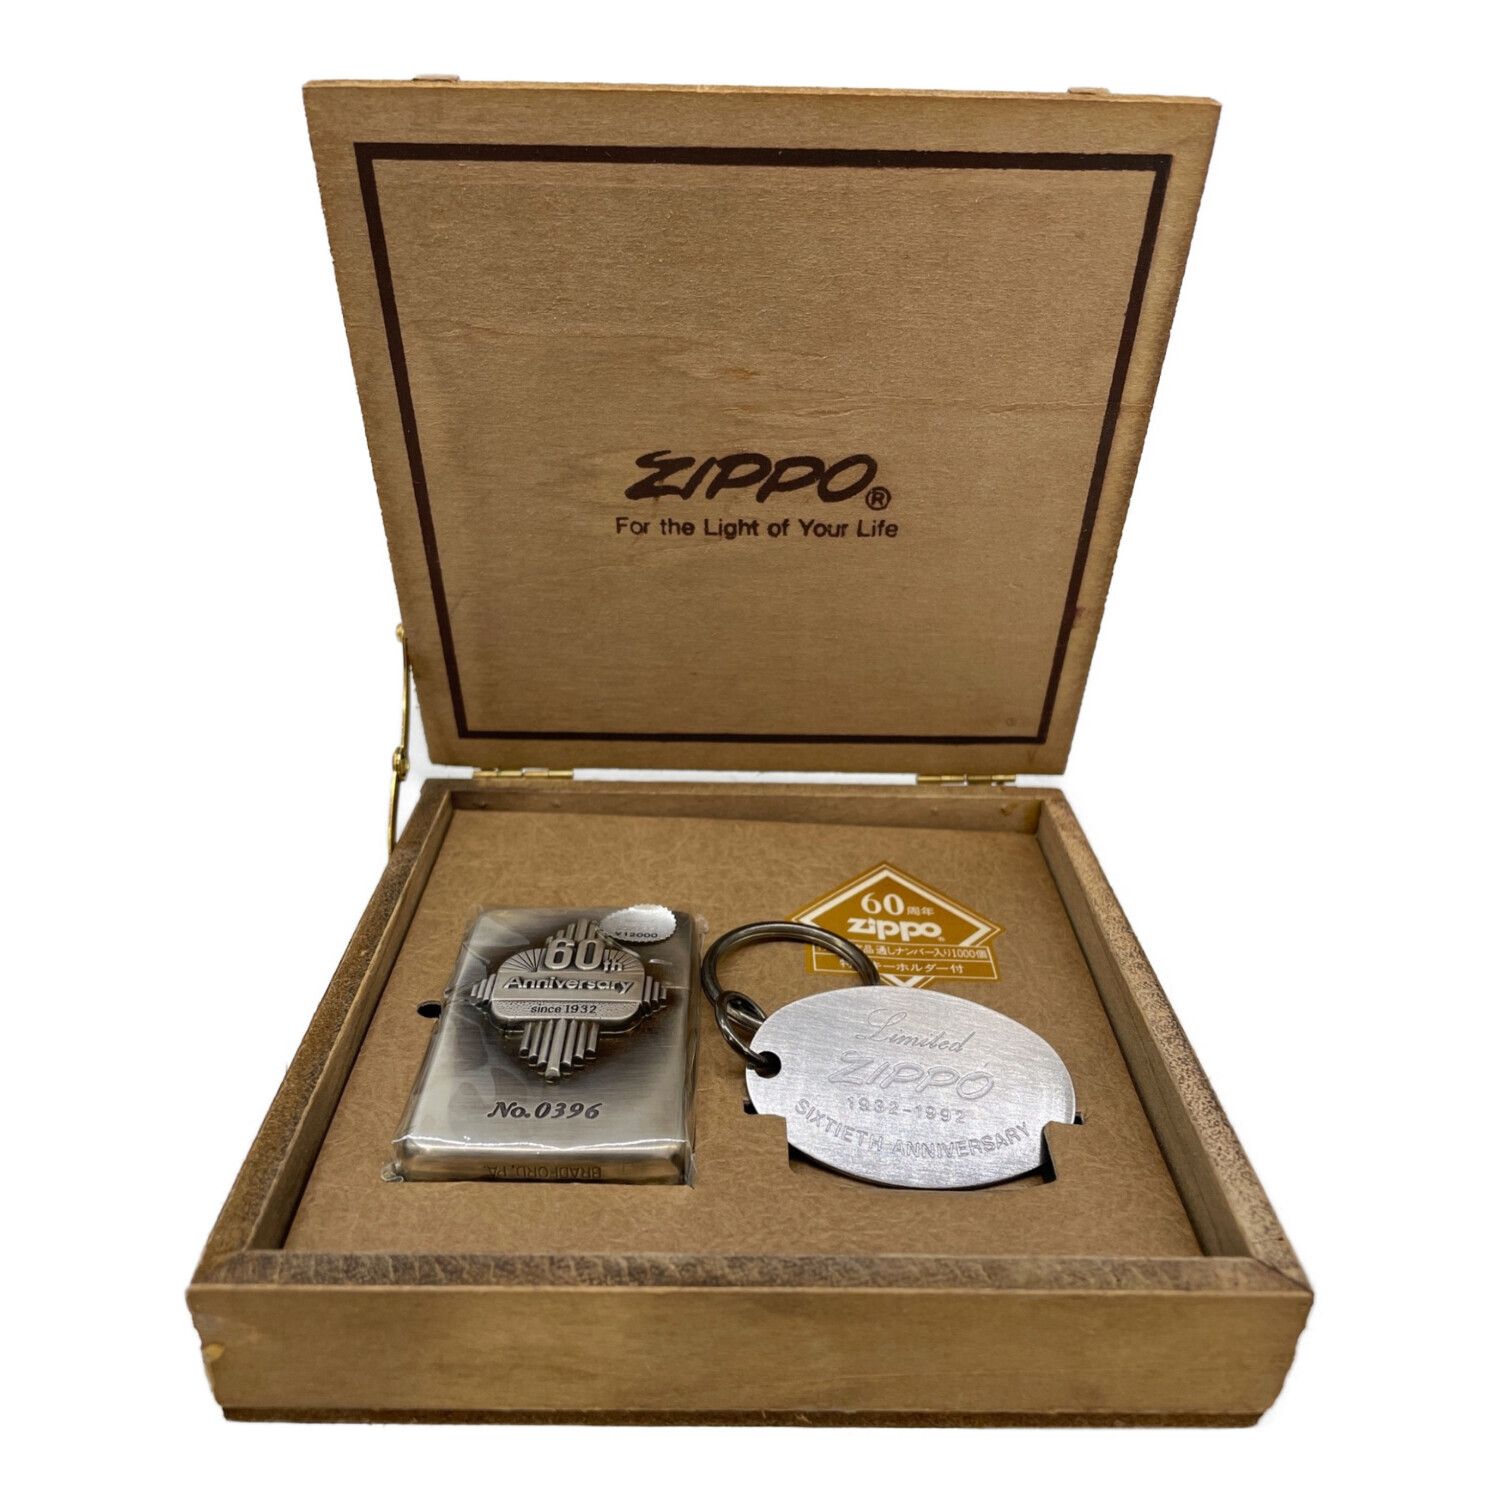 ZIPPO (ジッポ) オイルライター 60周年記念 特別限定品通しナンバー 